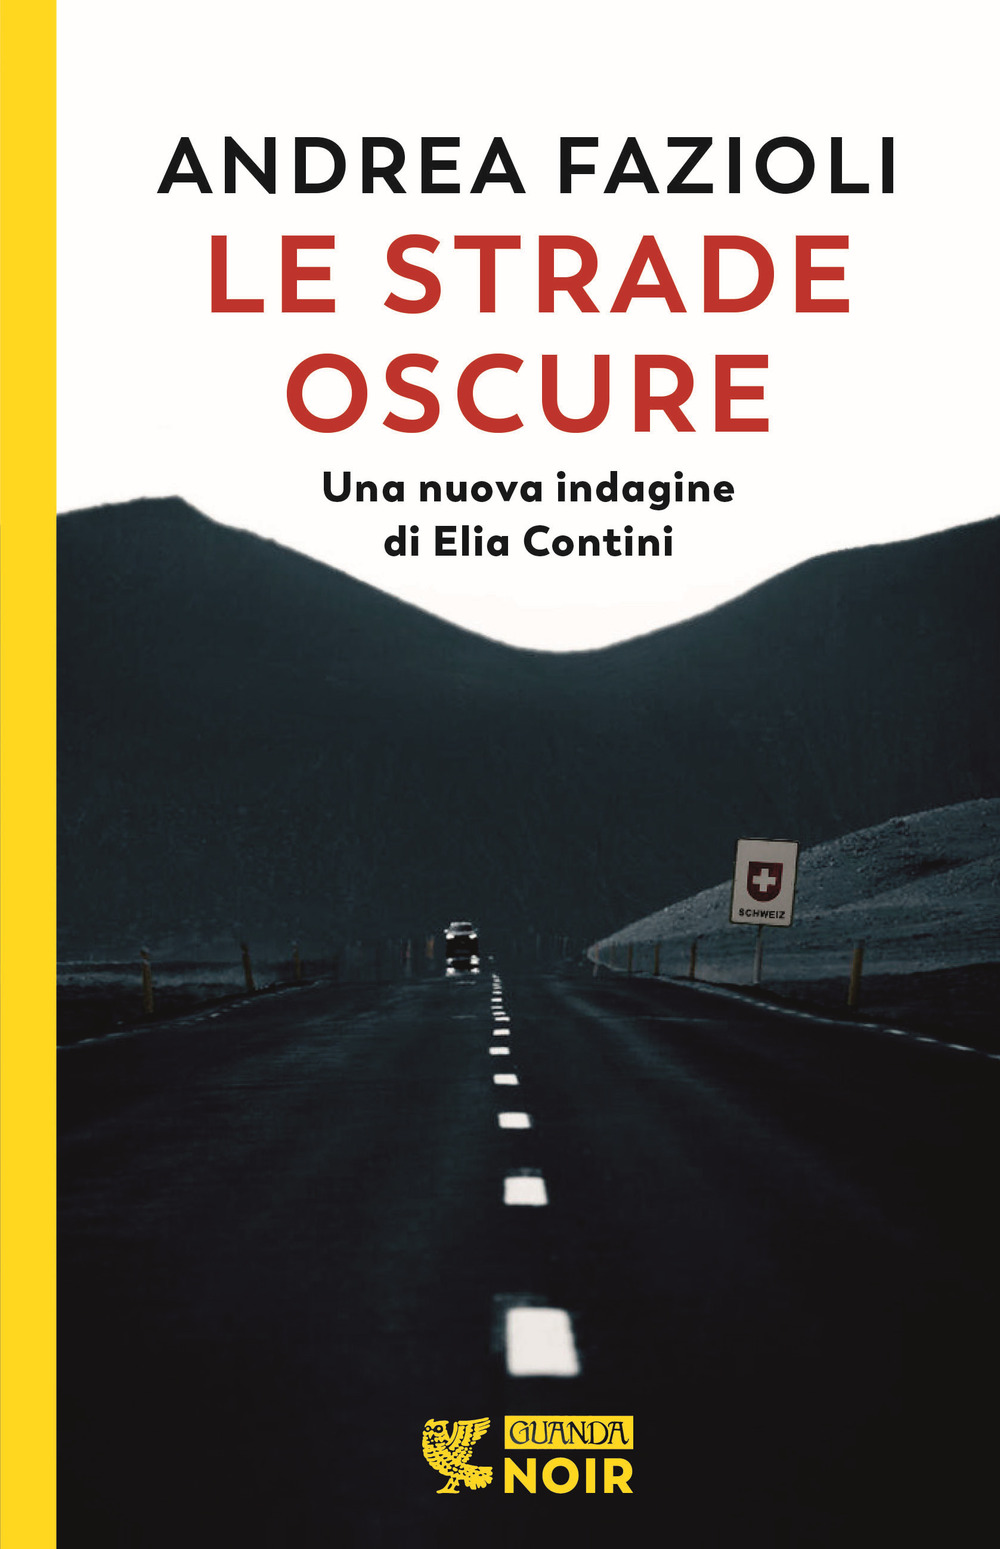 Libri Andrea Fazioli - Le Strade Oscure NUOVO SIGILLATO, EDIZIONE DEL 30/08/2022 SUBITO DISPONIBILE